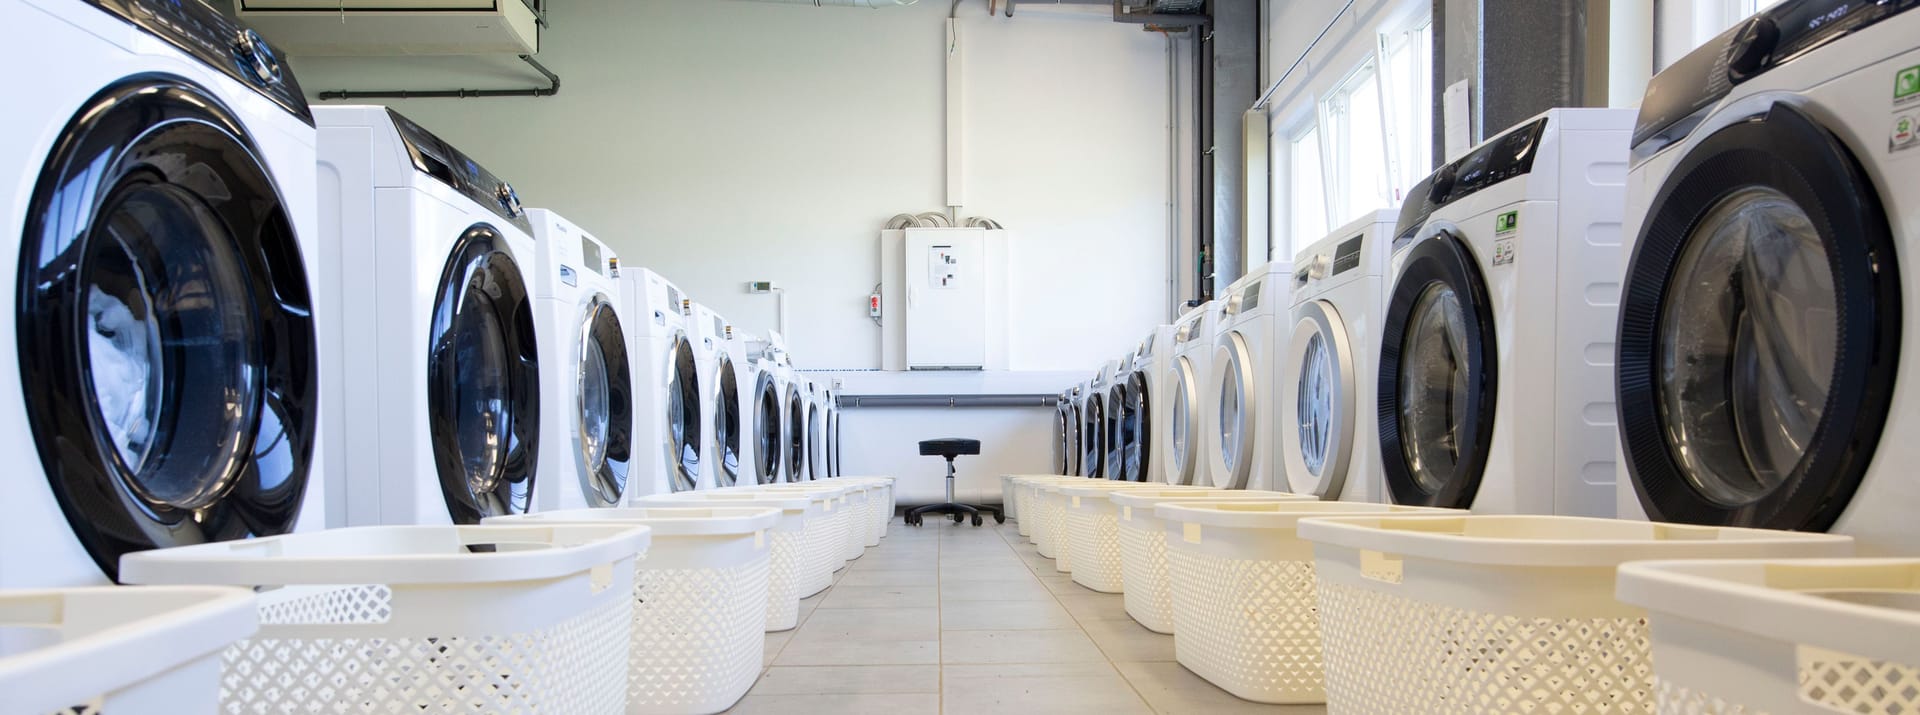 Waschmaschinen im Dauertest: Mit 1.200 Waschgängen je Maschine werden zehn Jahre Nutzungsdauer simuliert. Im Schichtbetrieb sind deshalb mehrere Mitarbeitende durchgehend mit waschen beschäftigt.